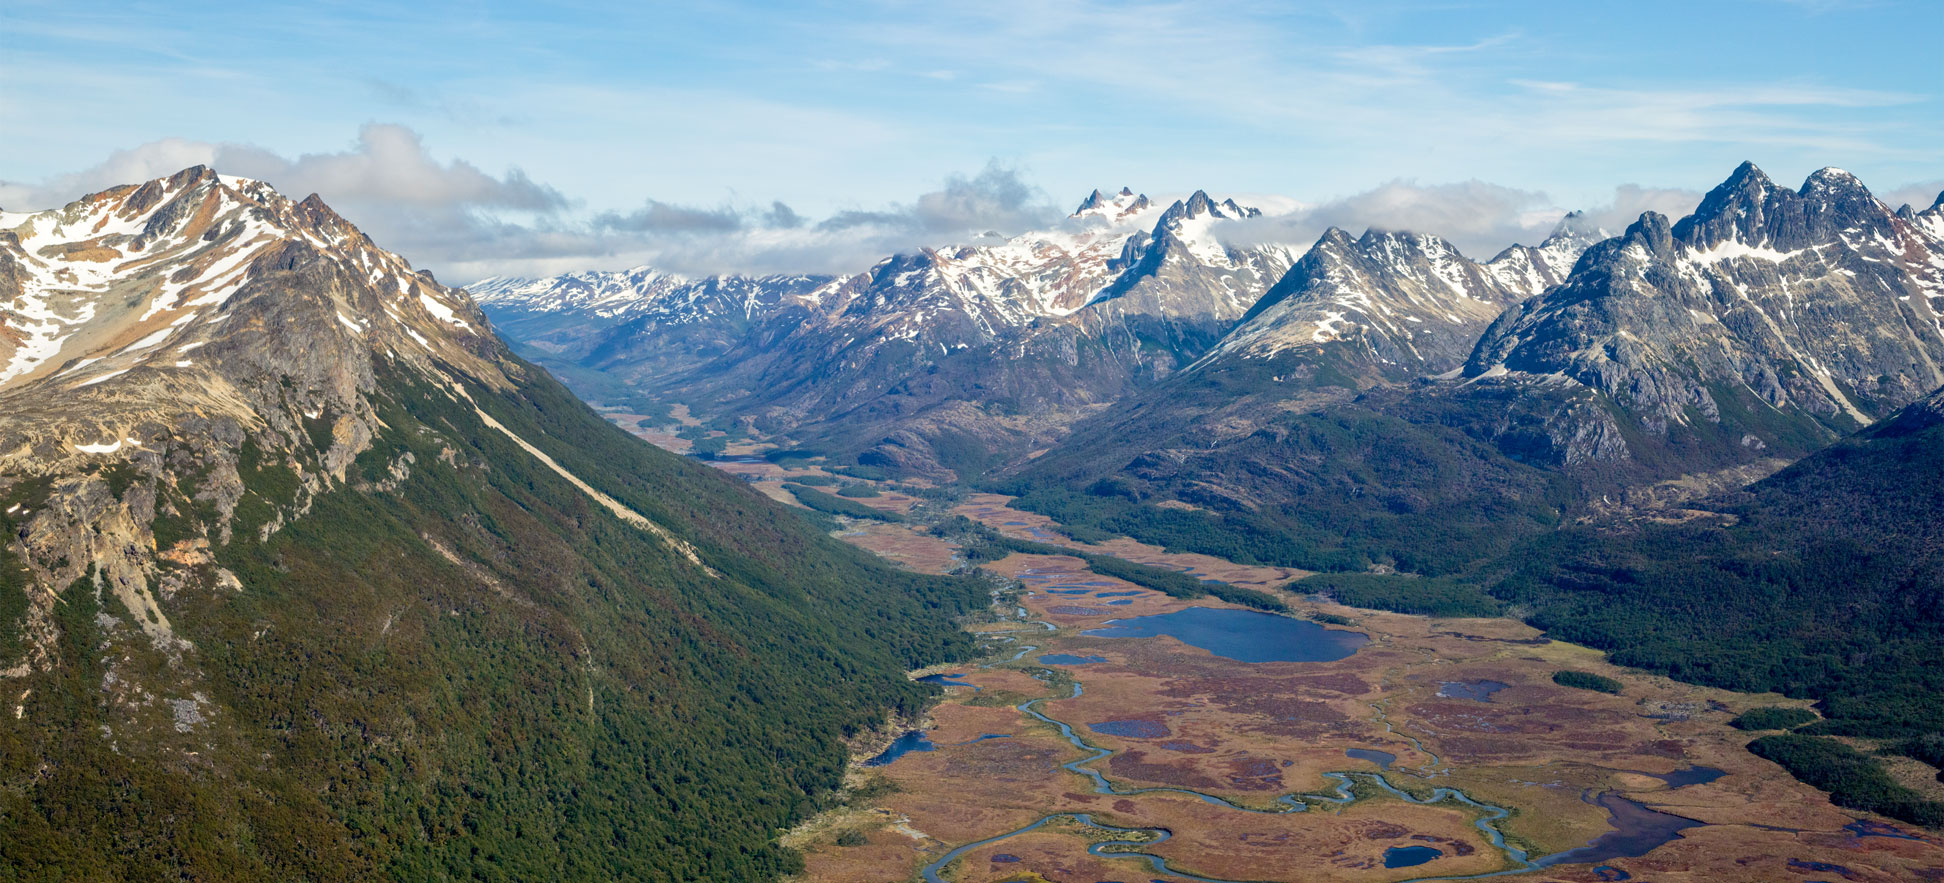 Carbajal Valley near Ushuaia in Tierra del Fuego, Argentina, South America